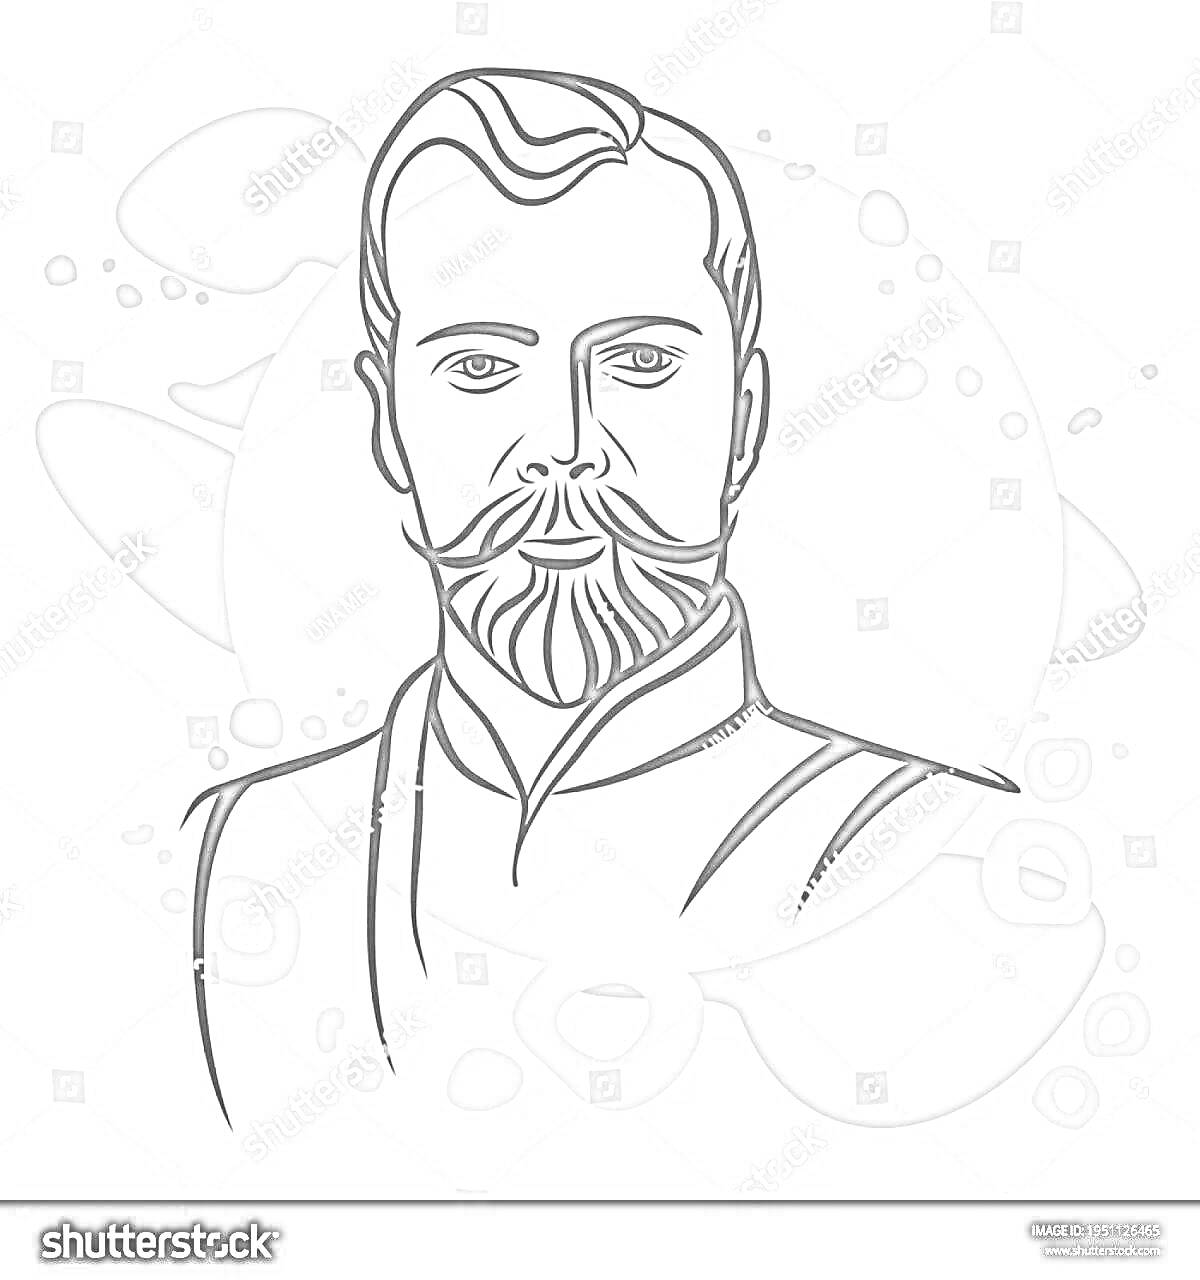 Портрет мужчины с бородой и усами на абстрактном фоне